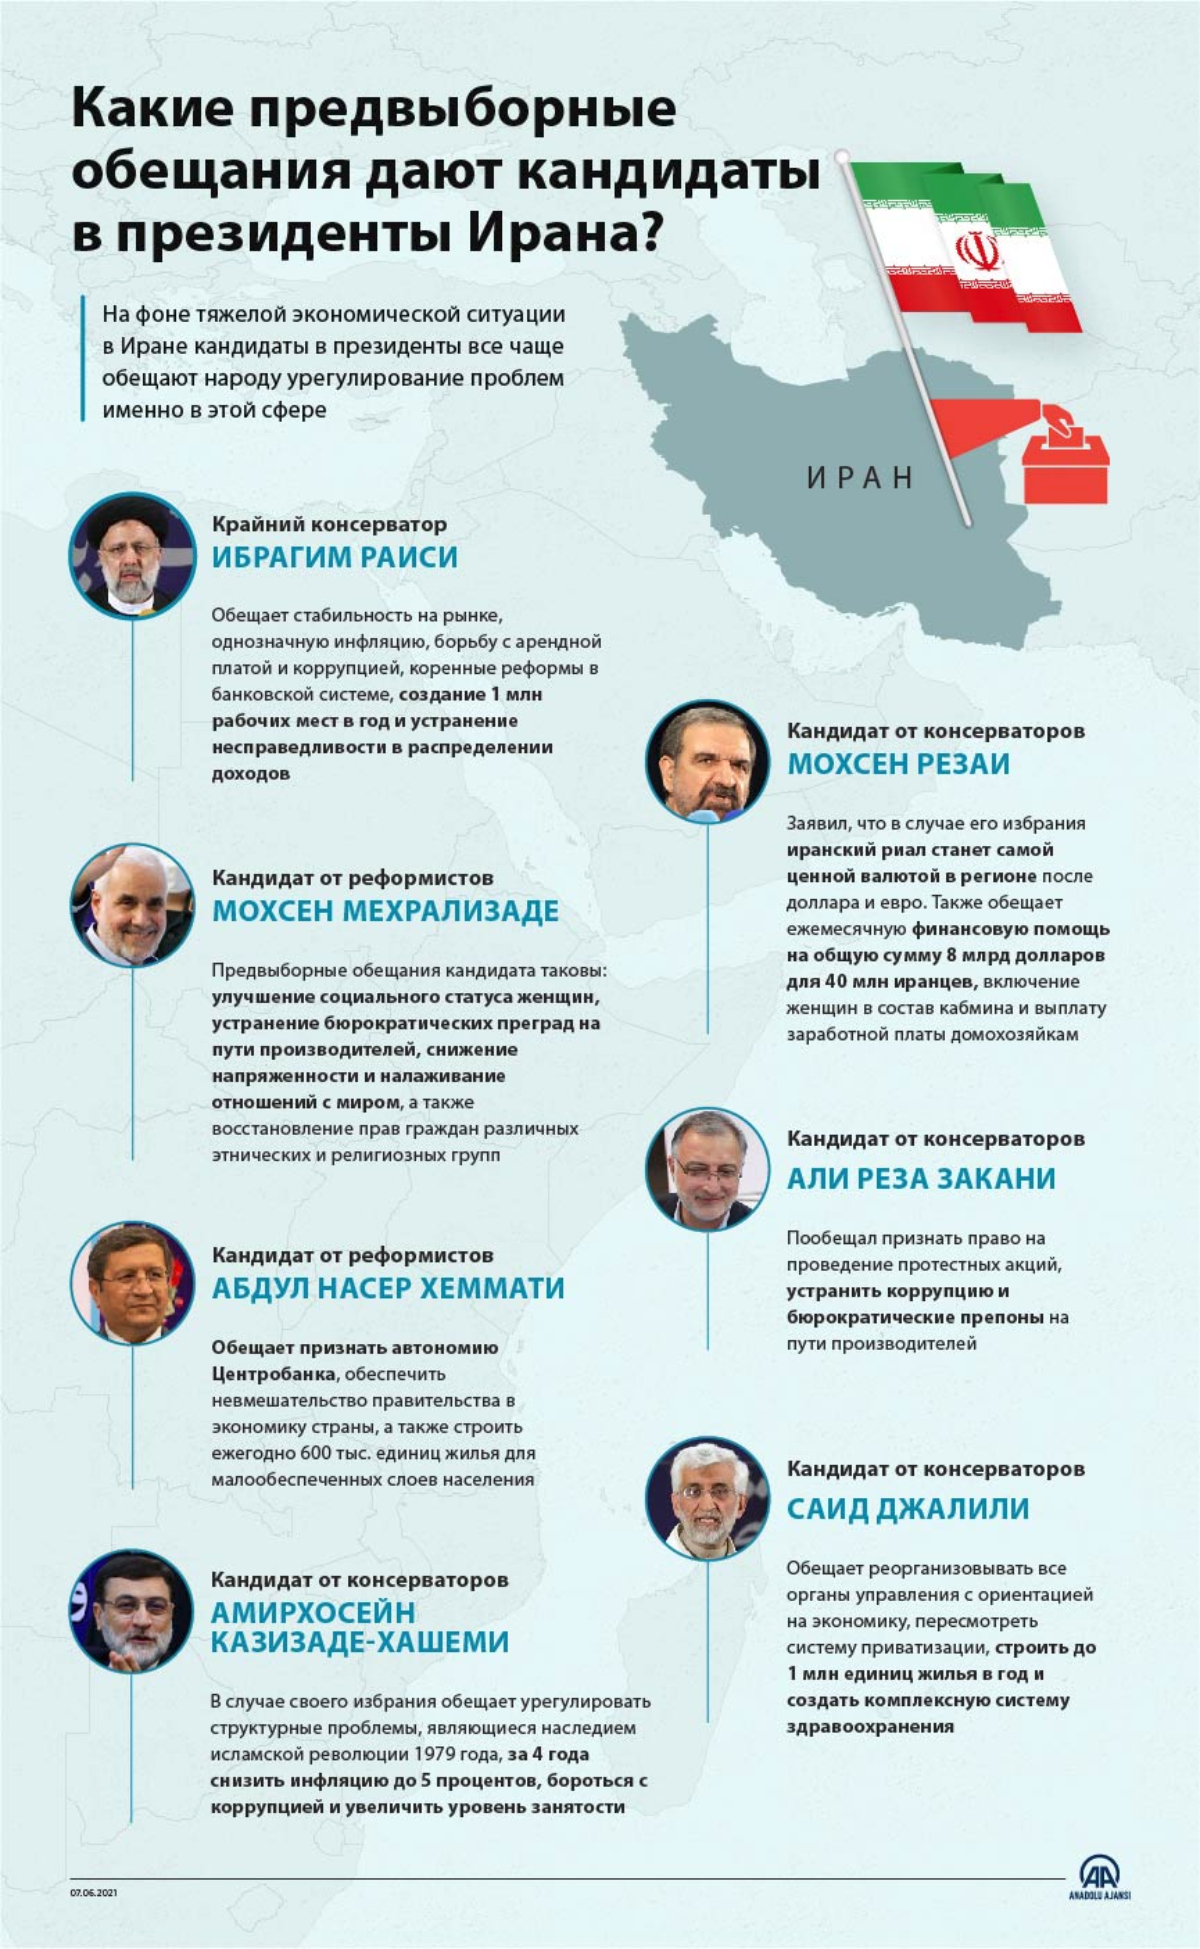 Какие предвыборные обещания дают кандидаты в президенты Ирана?